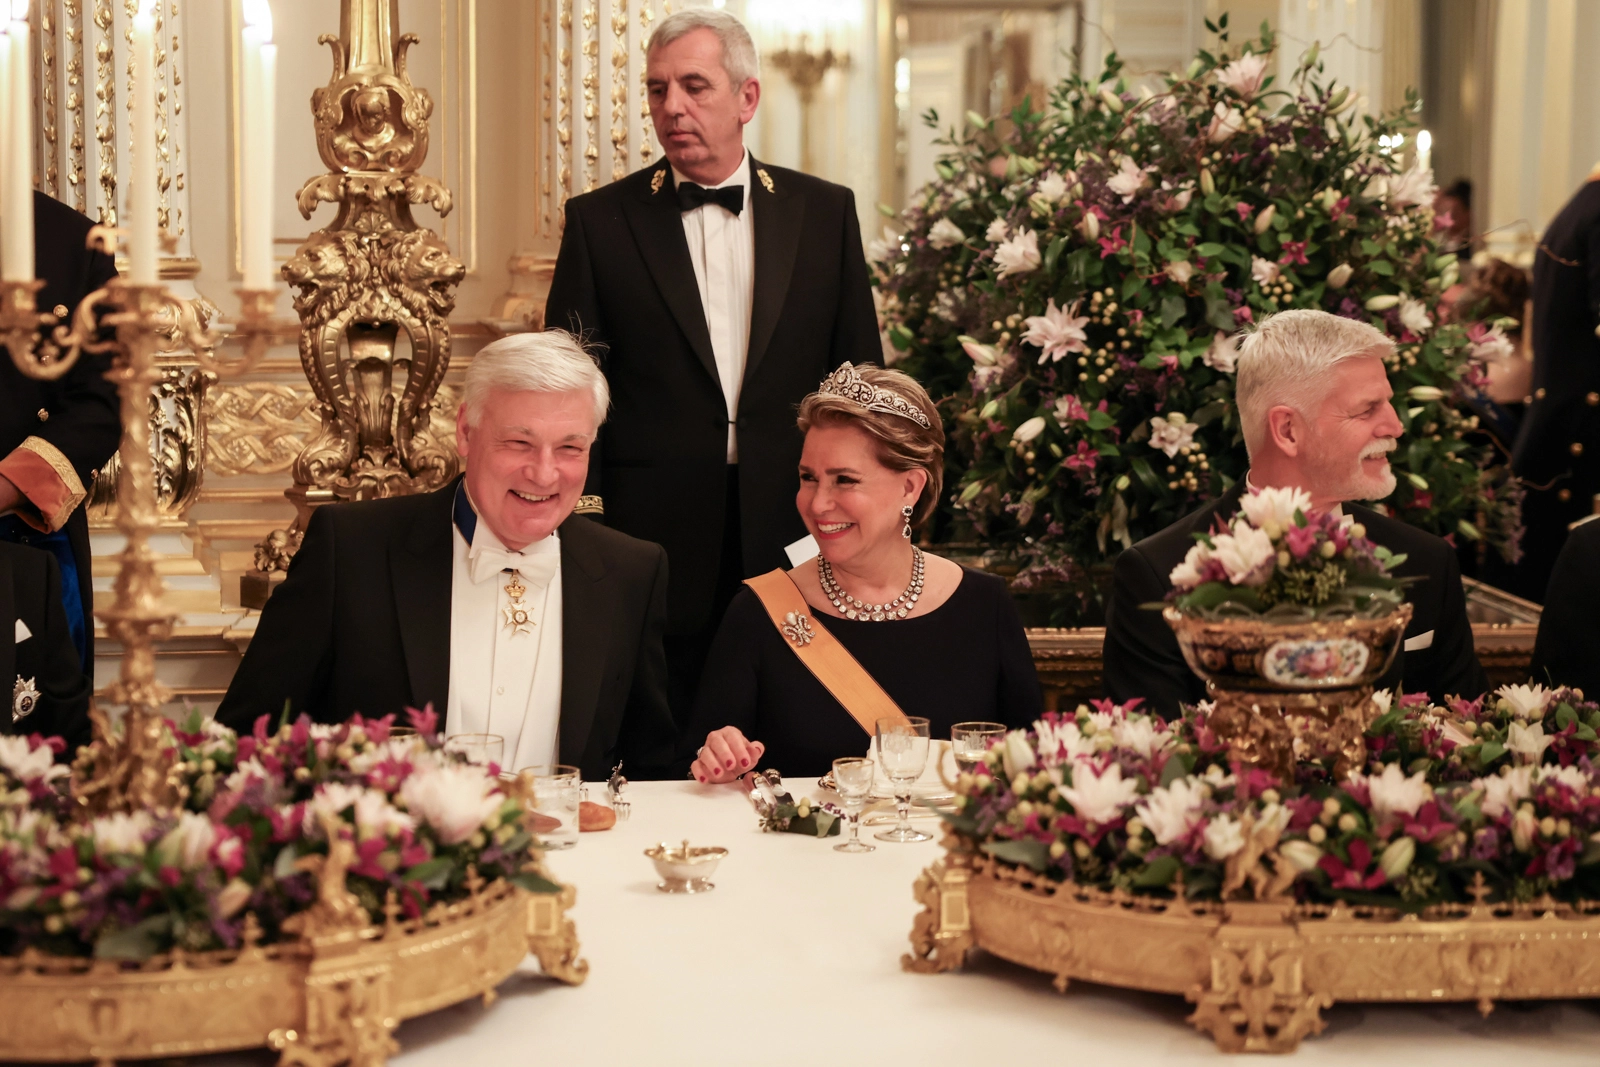 Die Luxemburger Royals beim Gala-Dinner: Maria Teresa von Luxemburg unterhält sich mit ihrem Tischherren vorzüglich. © Maison du Grand-Duc / Sophie Margue